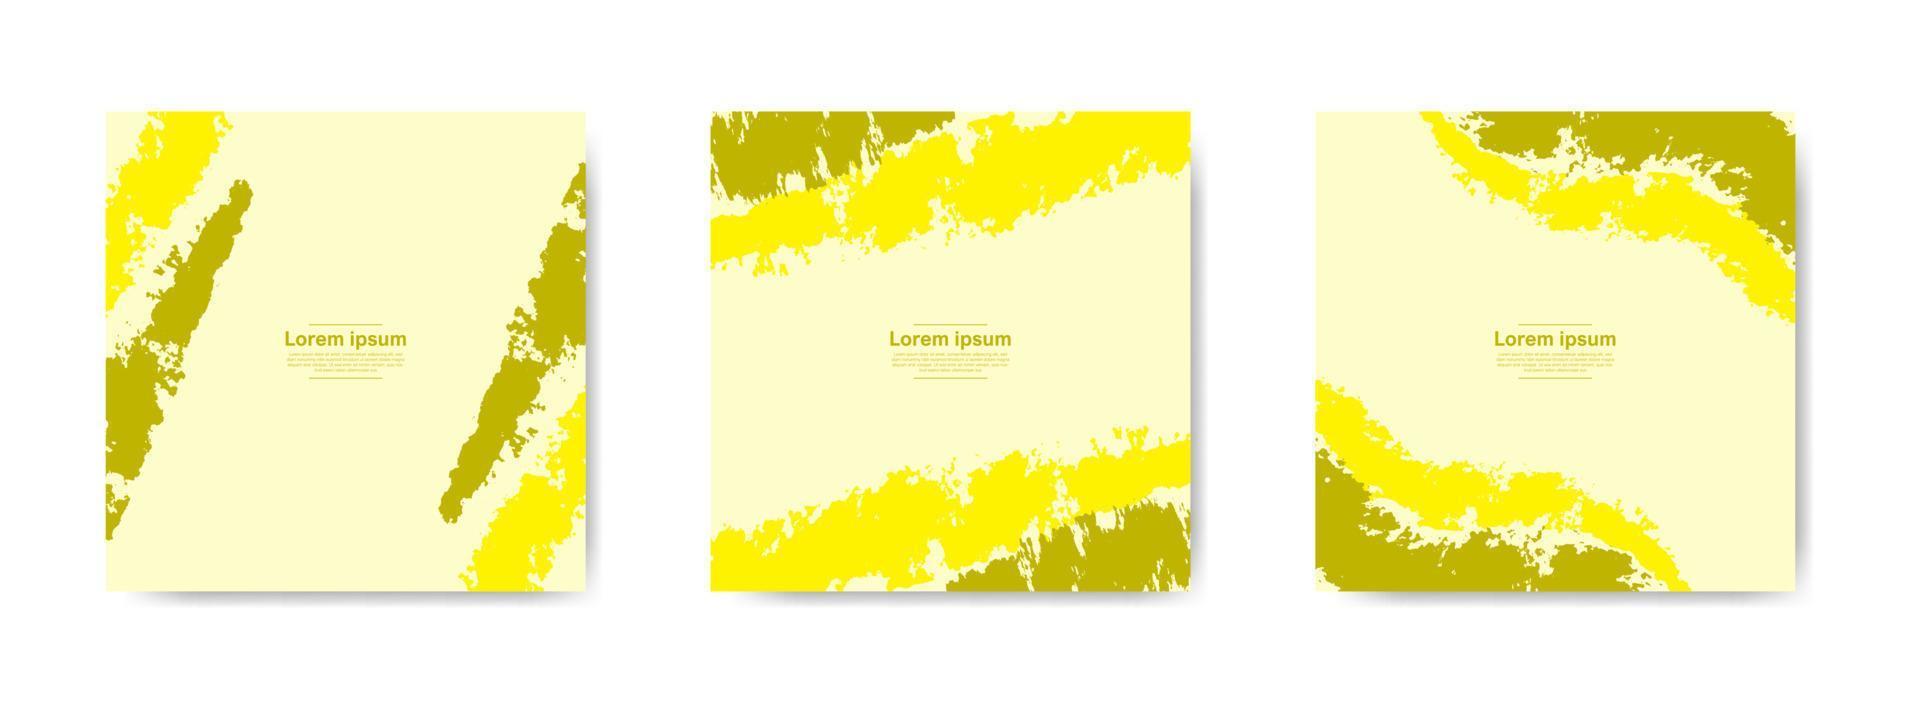 colección de banners grunge abstracto amarillo para publicaciones e historias en redes sociales vector